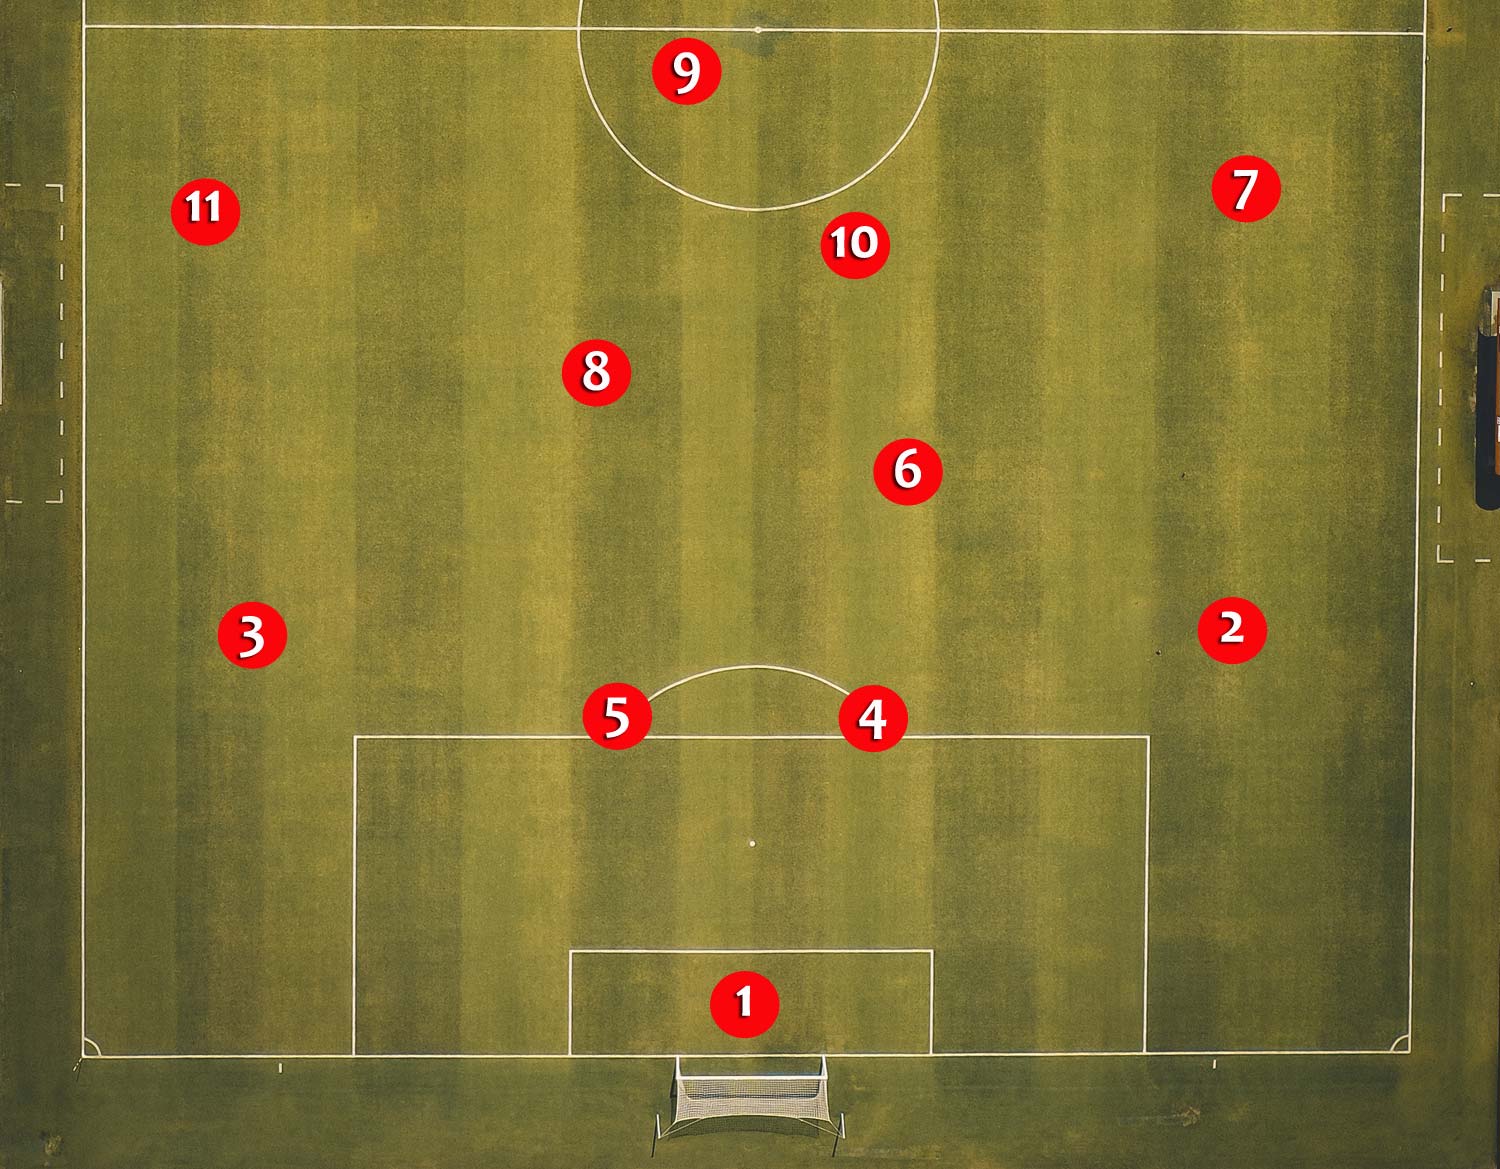 soccer number 8 position